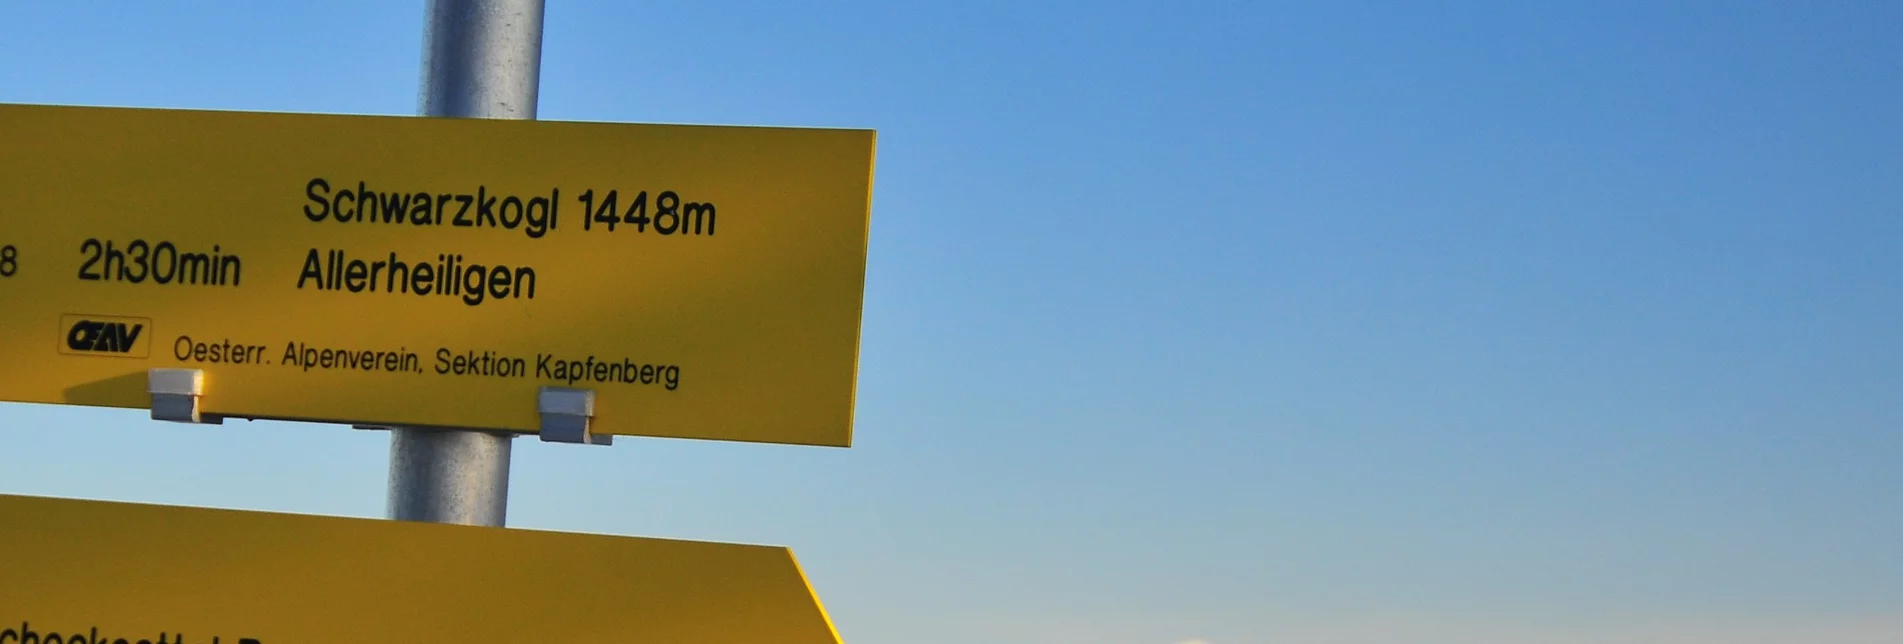 Long-Distance Hiking Wanderung von Bruck durch die Waldheimat Peter Roseggers bis Mürzzuschlag - Touren-Impression #1 | © TV Hochsteiermark